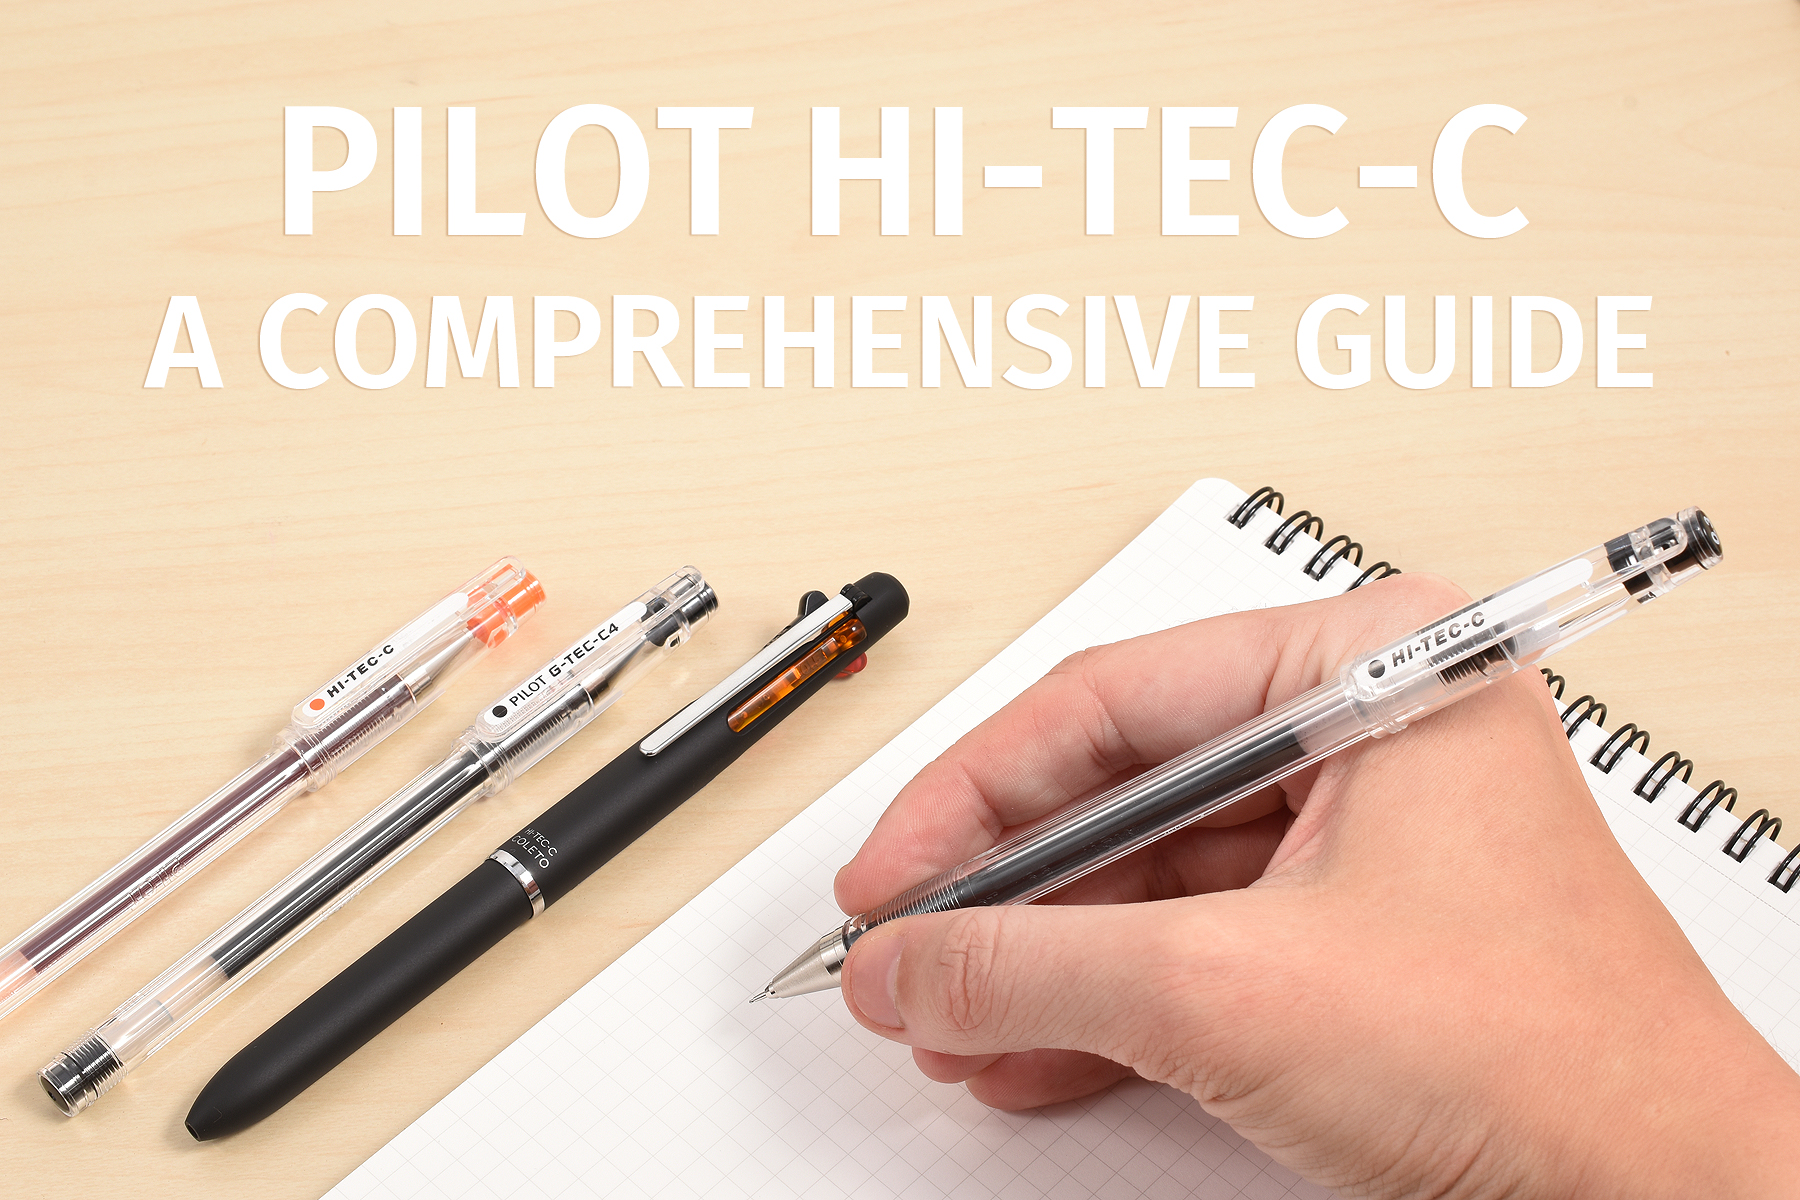 Hi-Tec-C: A Comprehensive Guide